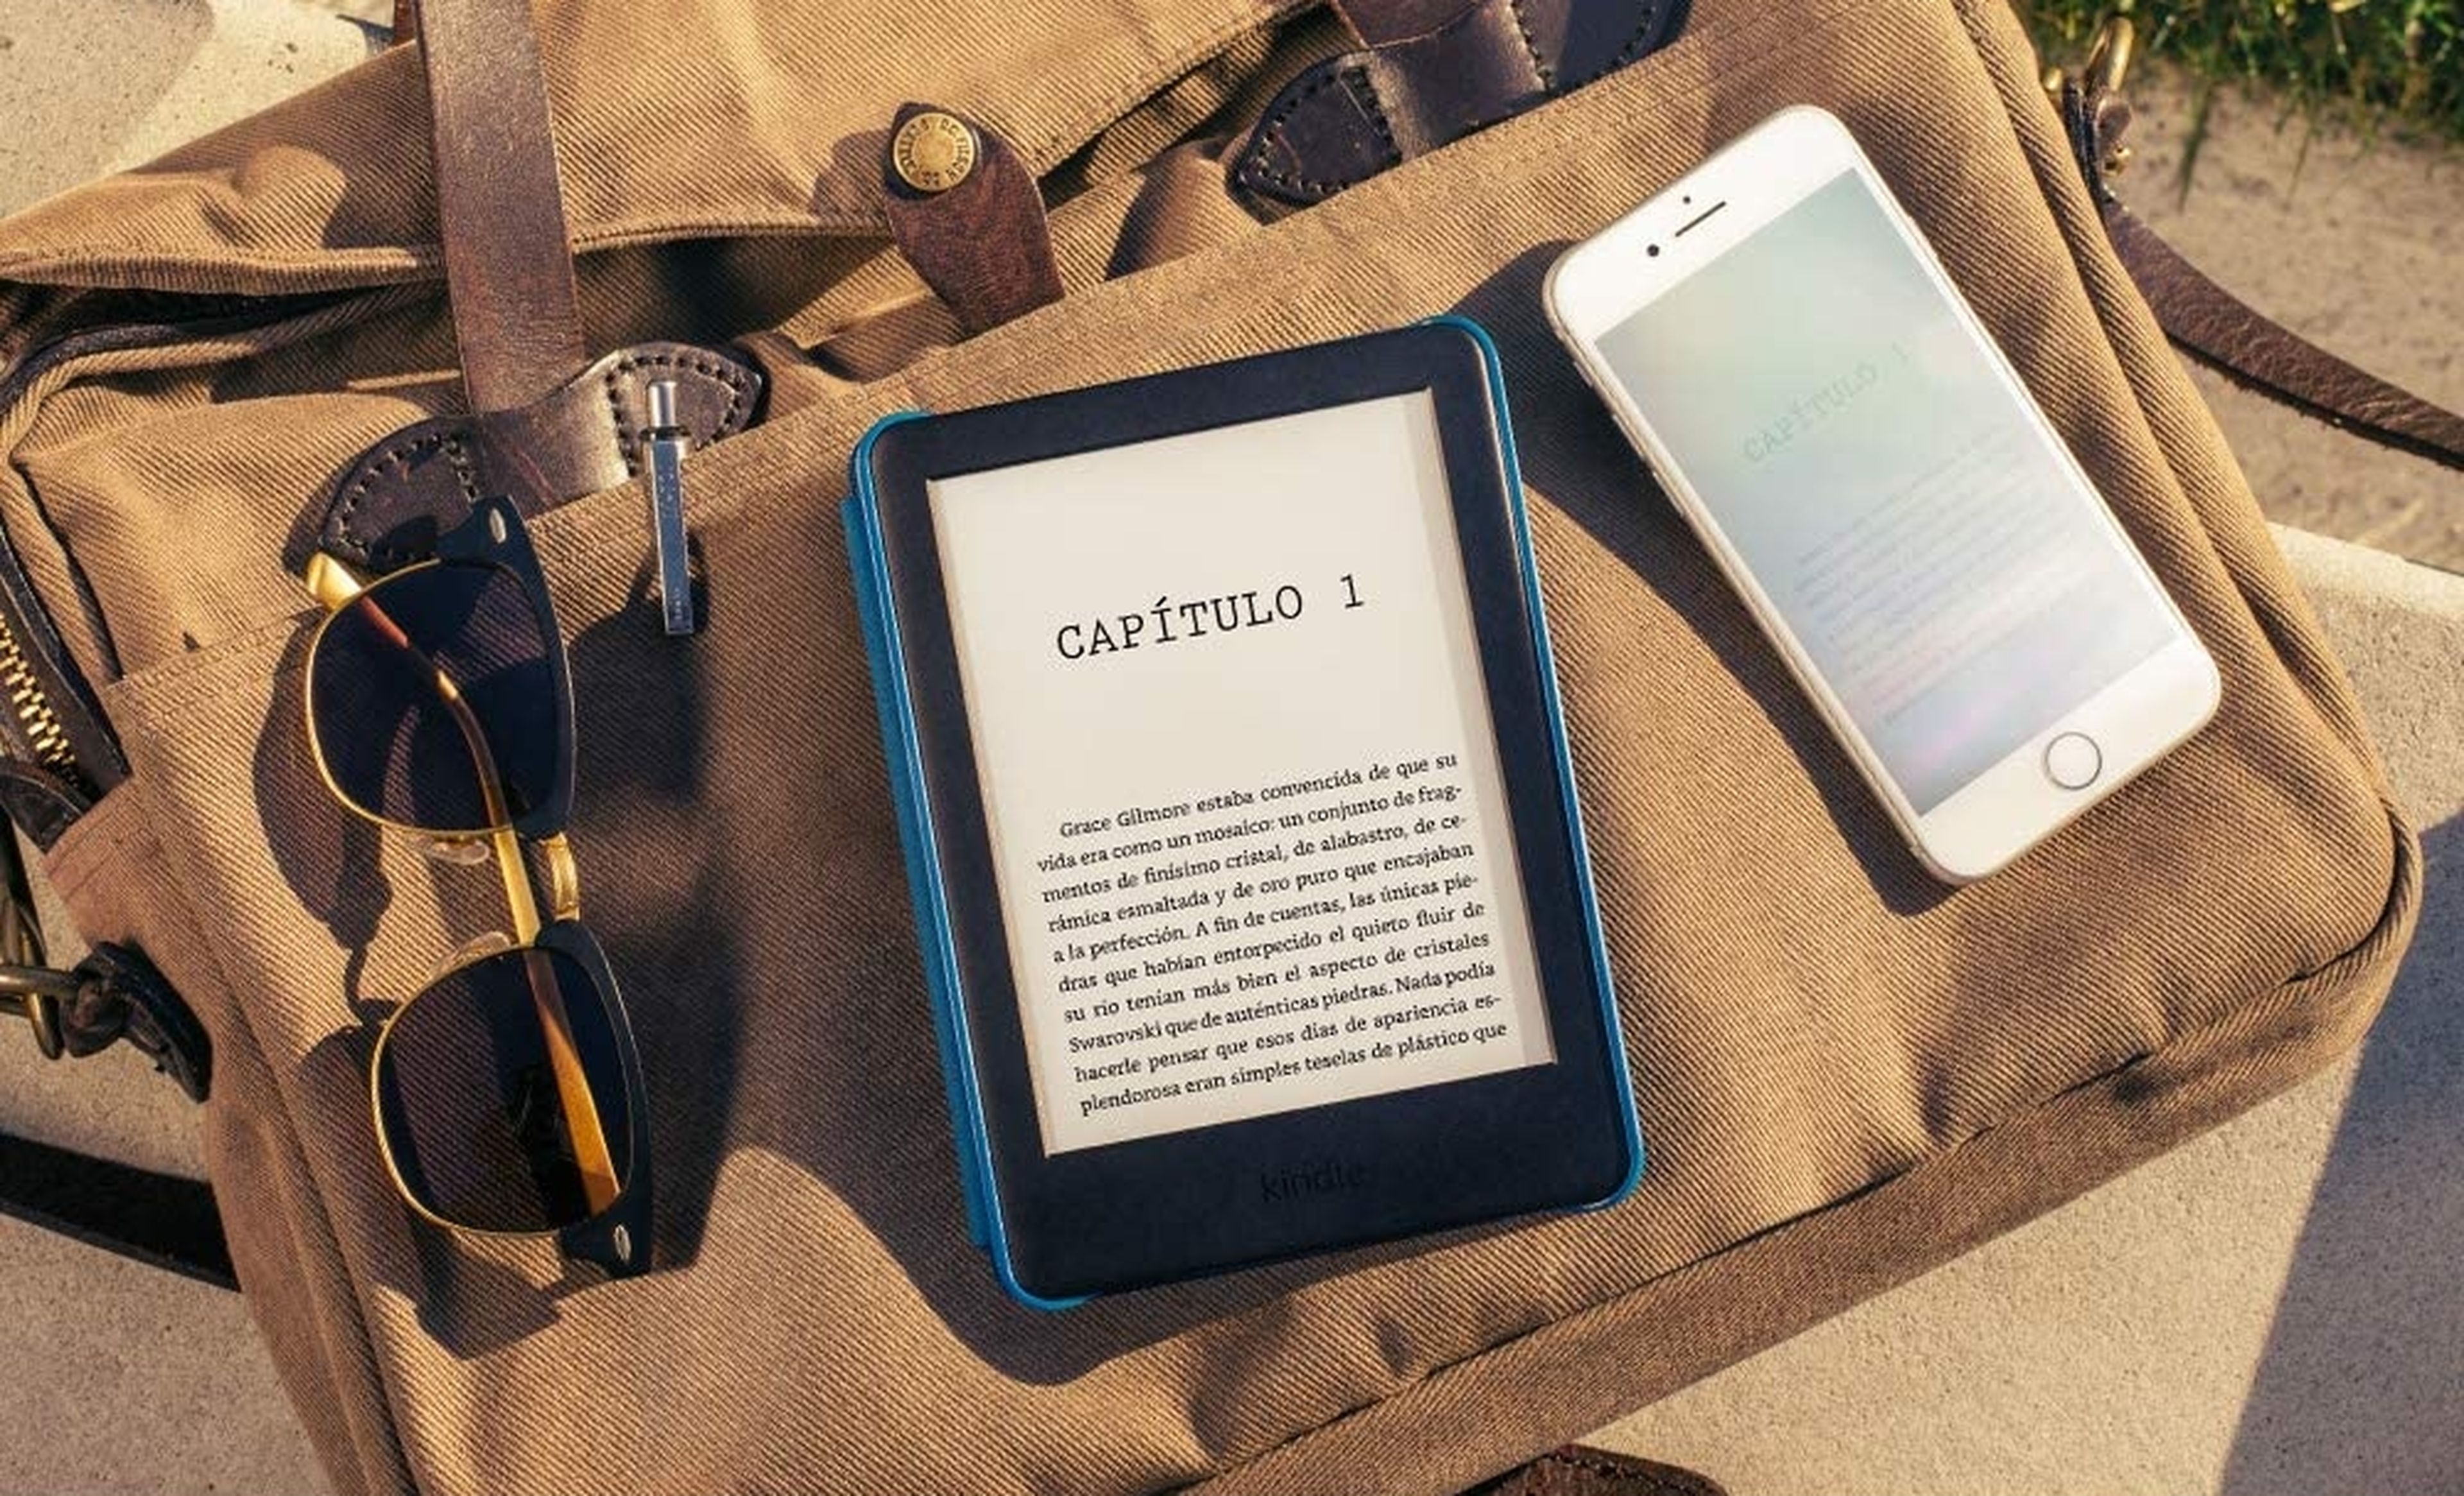 Si quieres leer este verano esta es tu oportunidad: Amazon Kindle ahora está en oferta